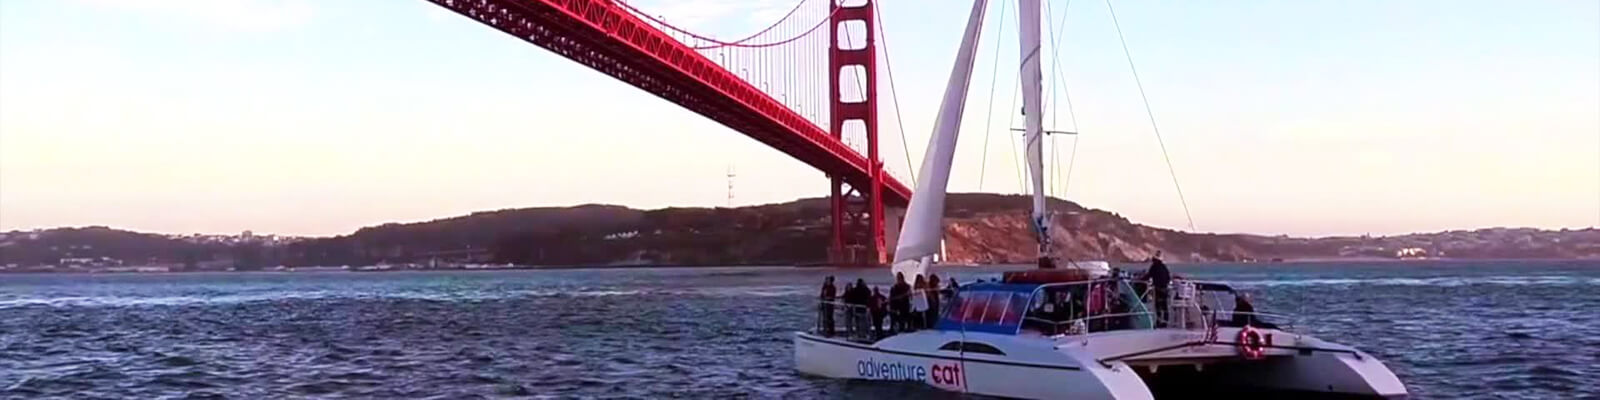 Adventure Cat Sailing San Francisco Coupons